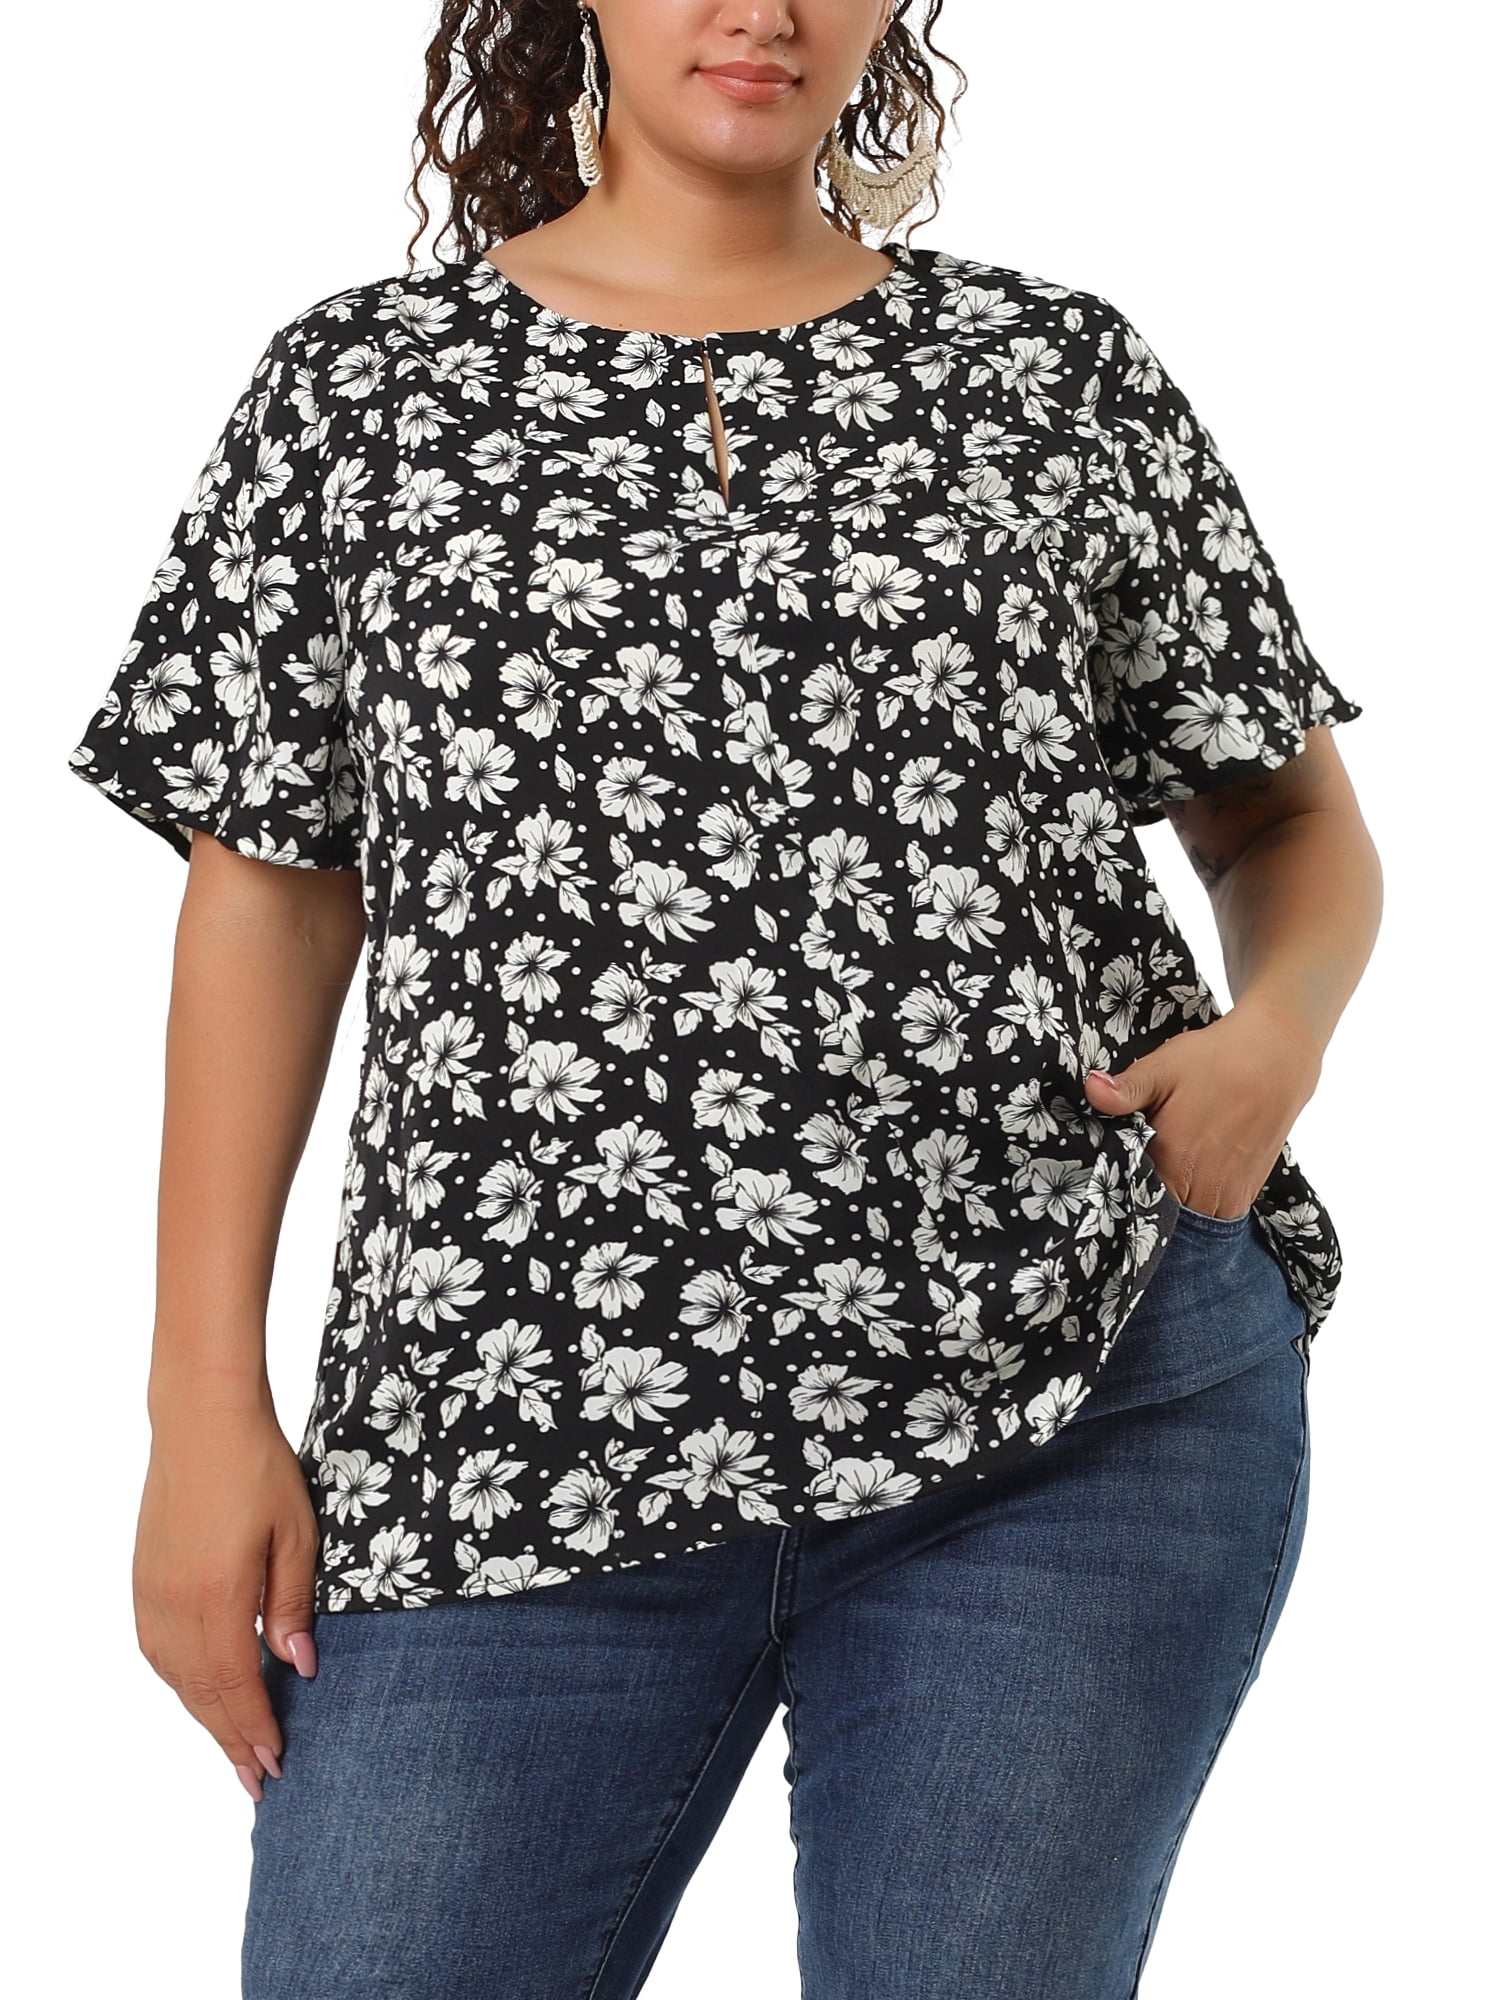 Unique Bargains Women's Plus Size Summer Ruffle Short Sleeve Tops Chiffon  Floral Blouse 3X Black 